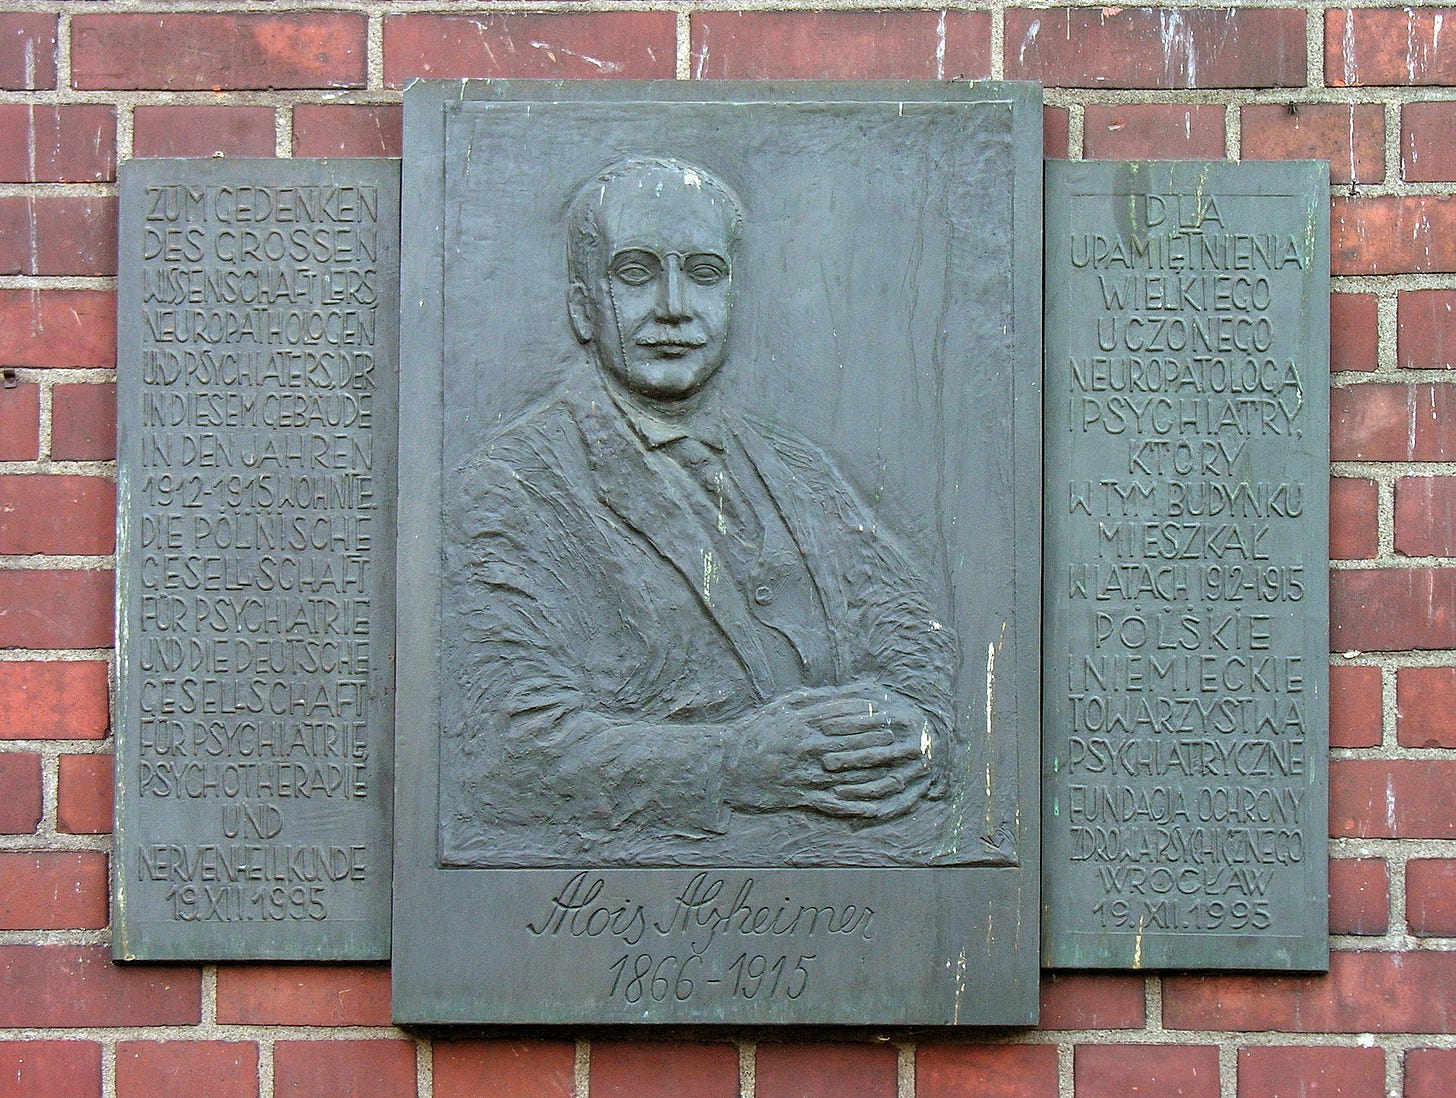 Memorial plaque in Wrocław, ul. Bujwida 42